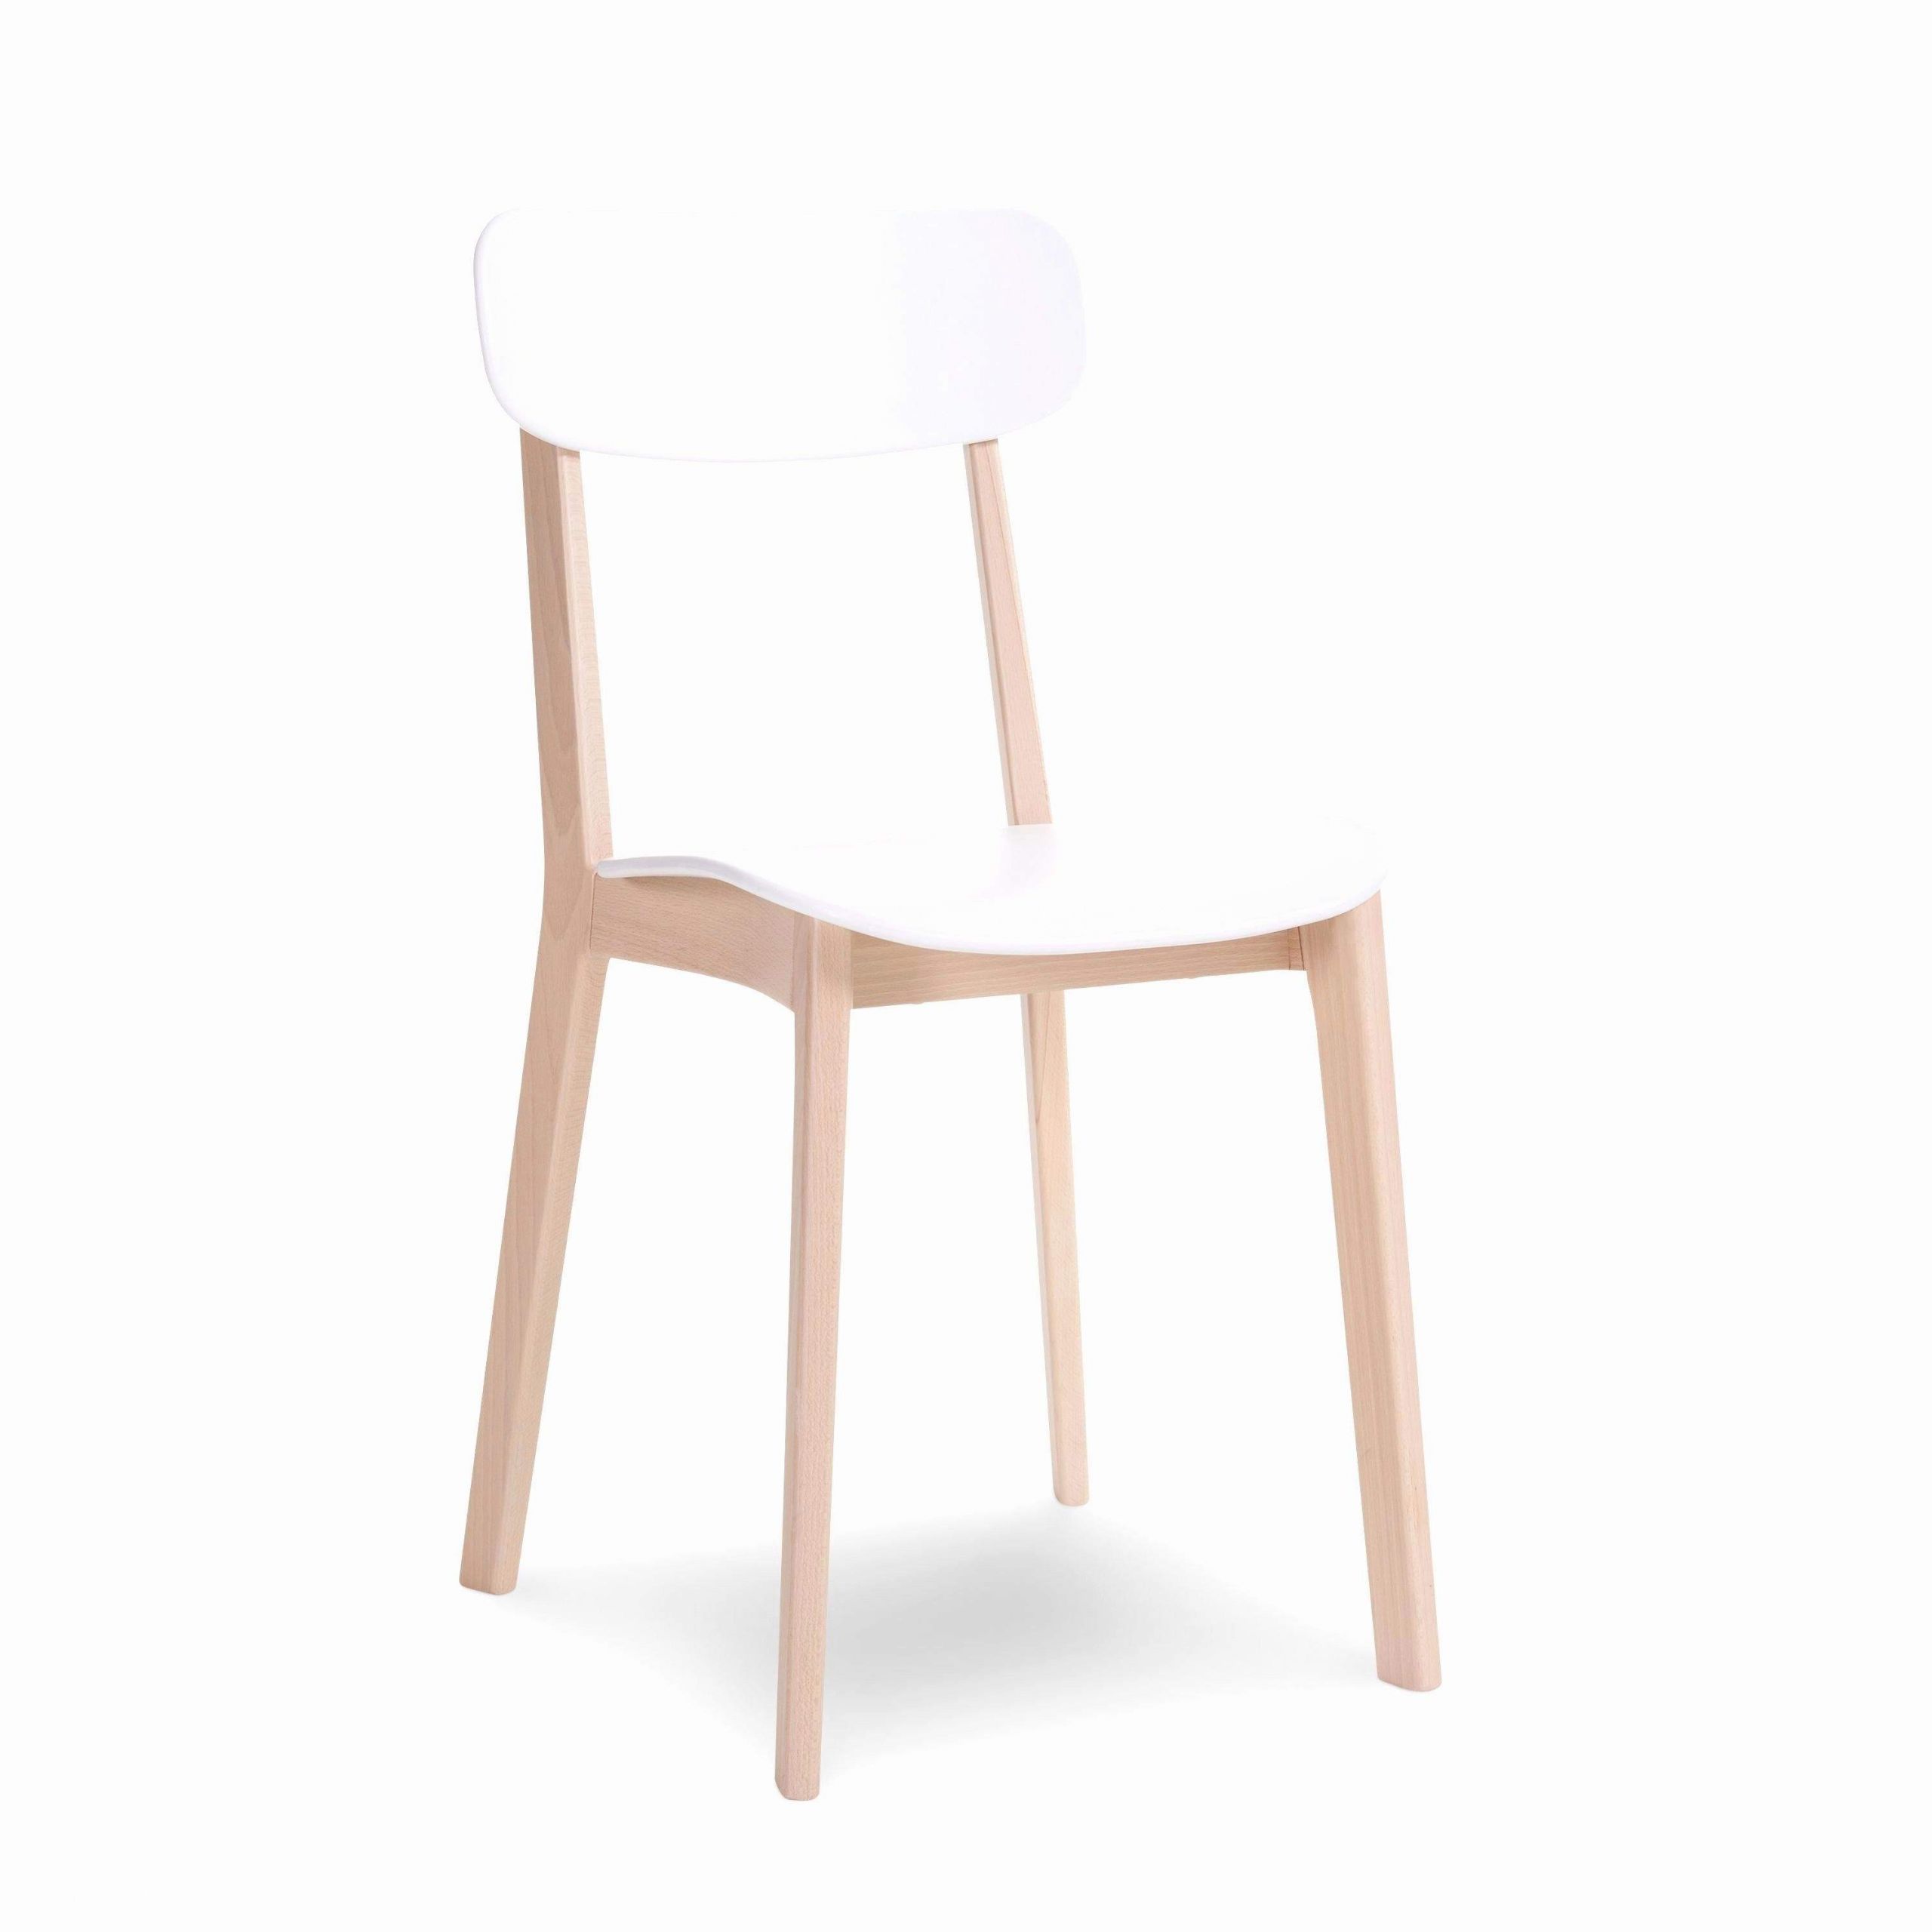 design stuhl holz elegant design stuhl holz das beste von stuhl esstisch frisch